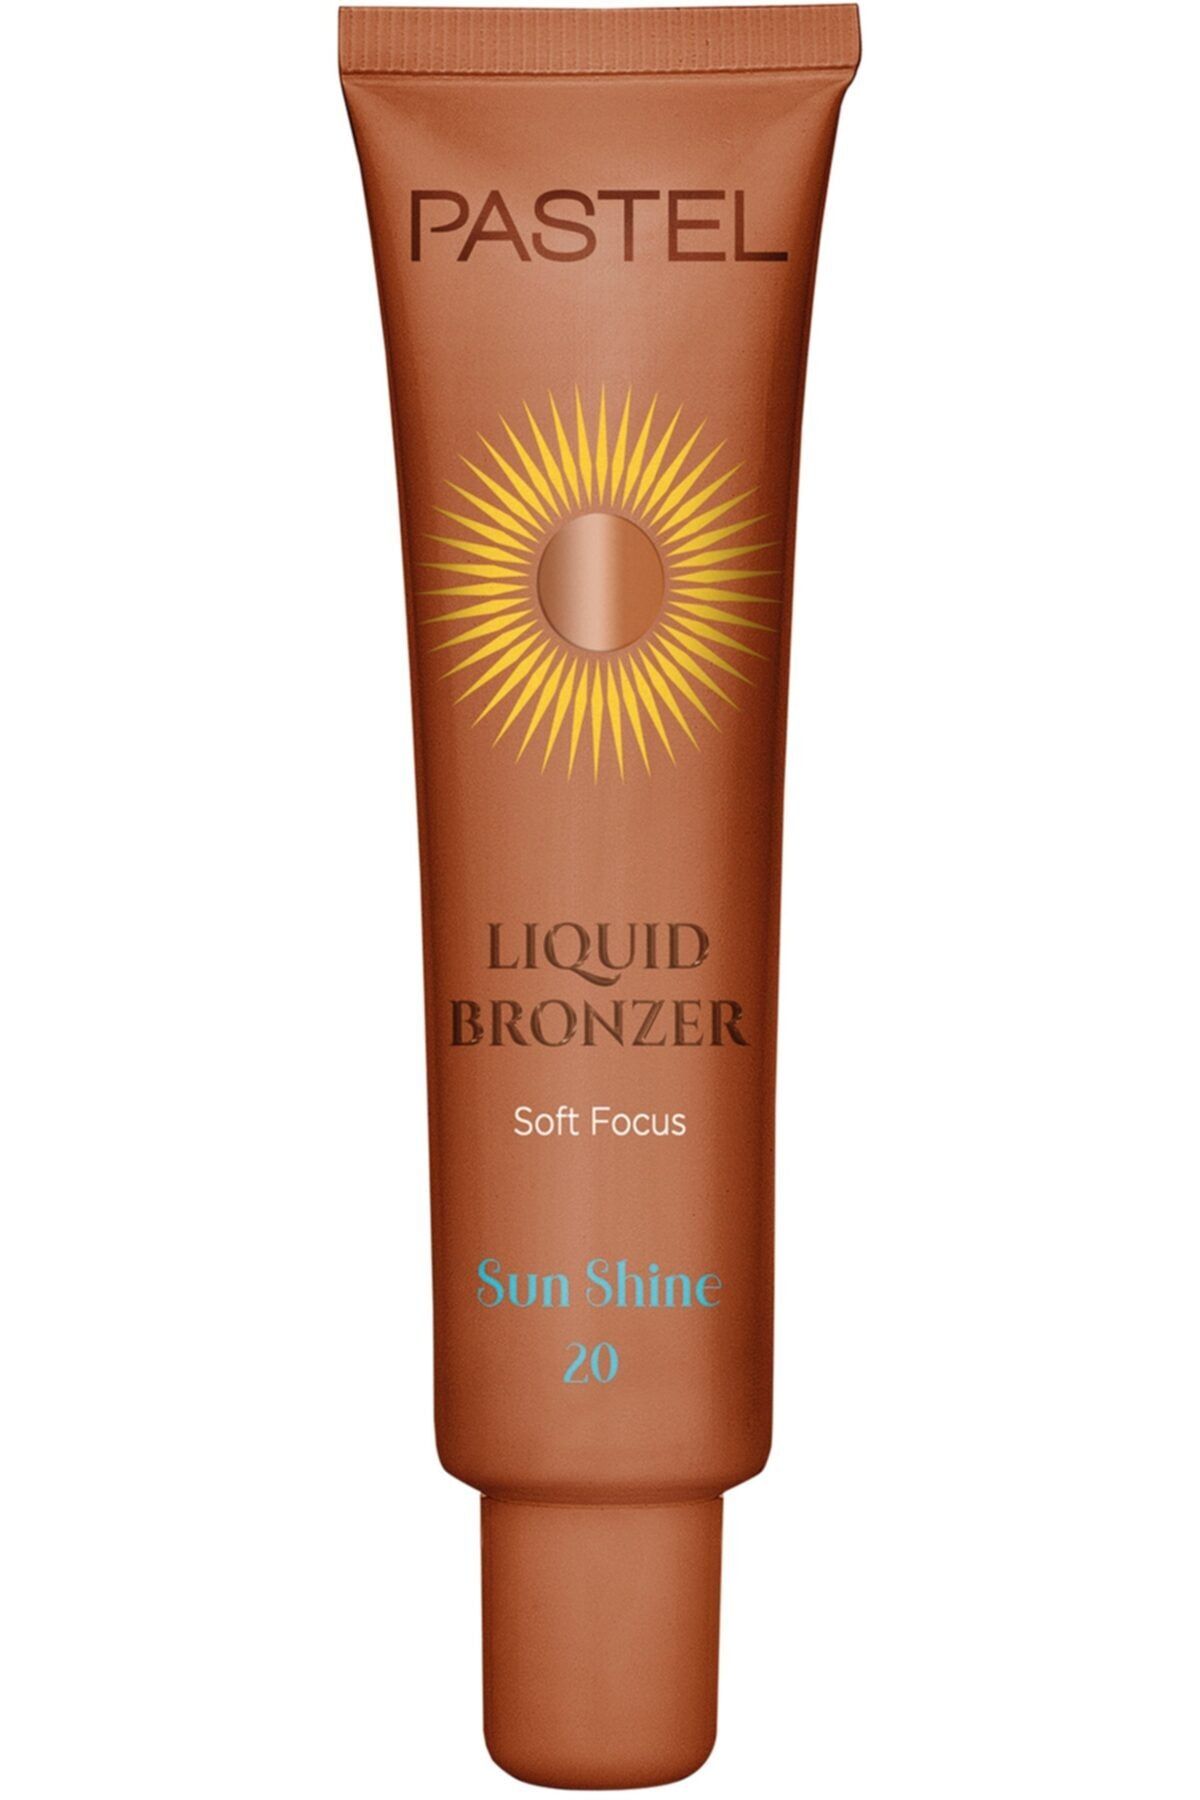 Pastel Profashion Liquid Bronzer Soft Focus Sunshine 20